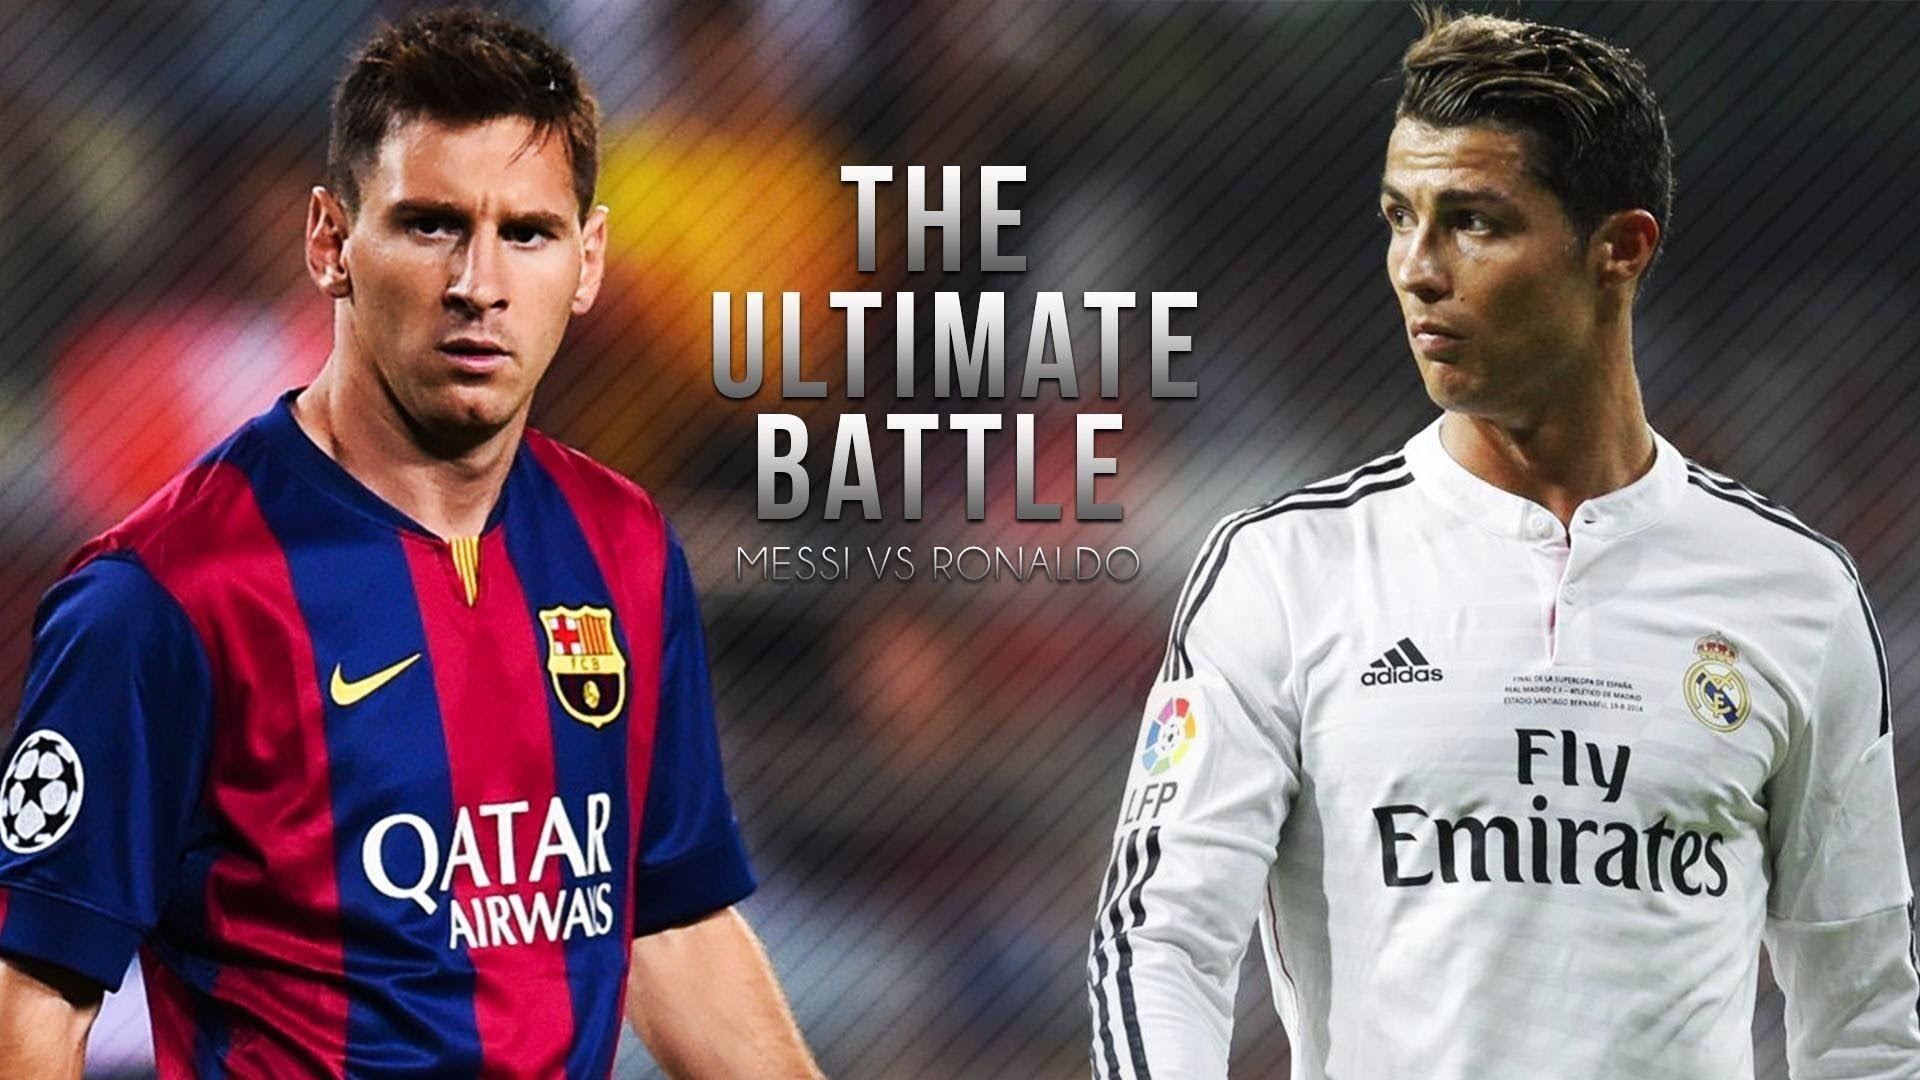 Lionel Messi vs Cristiano Ronaldo ● The Ultimate Battle 2015. HD